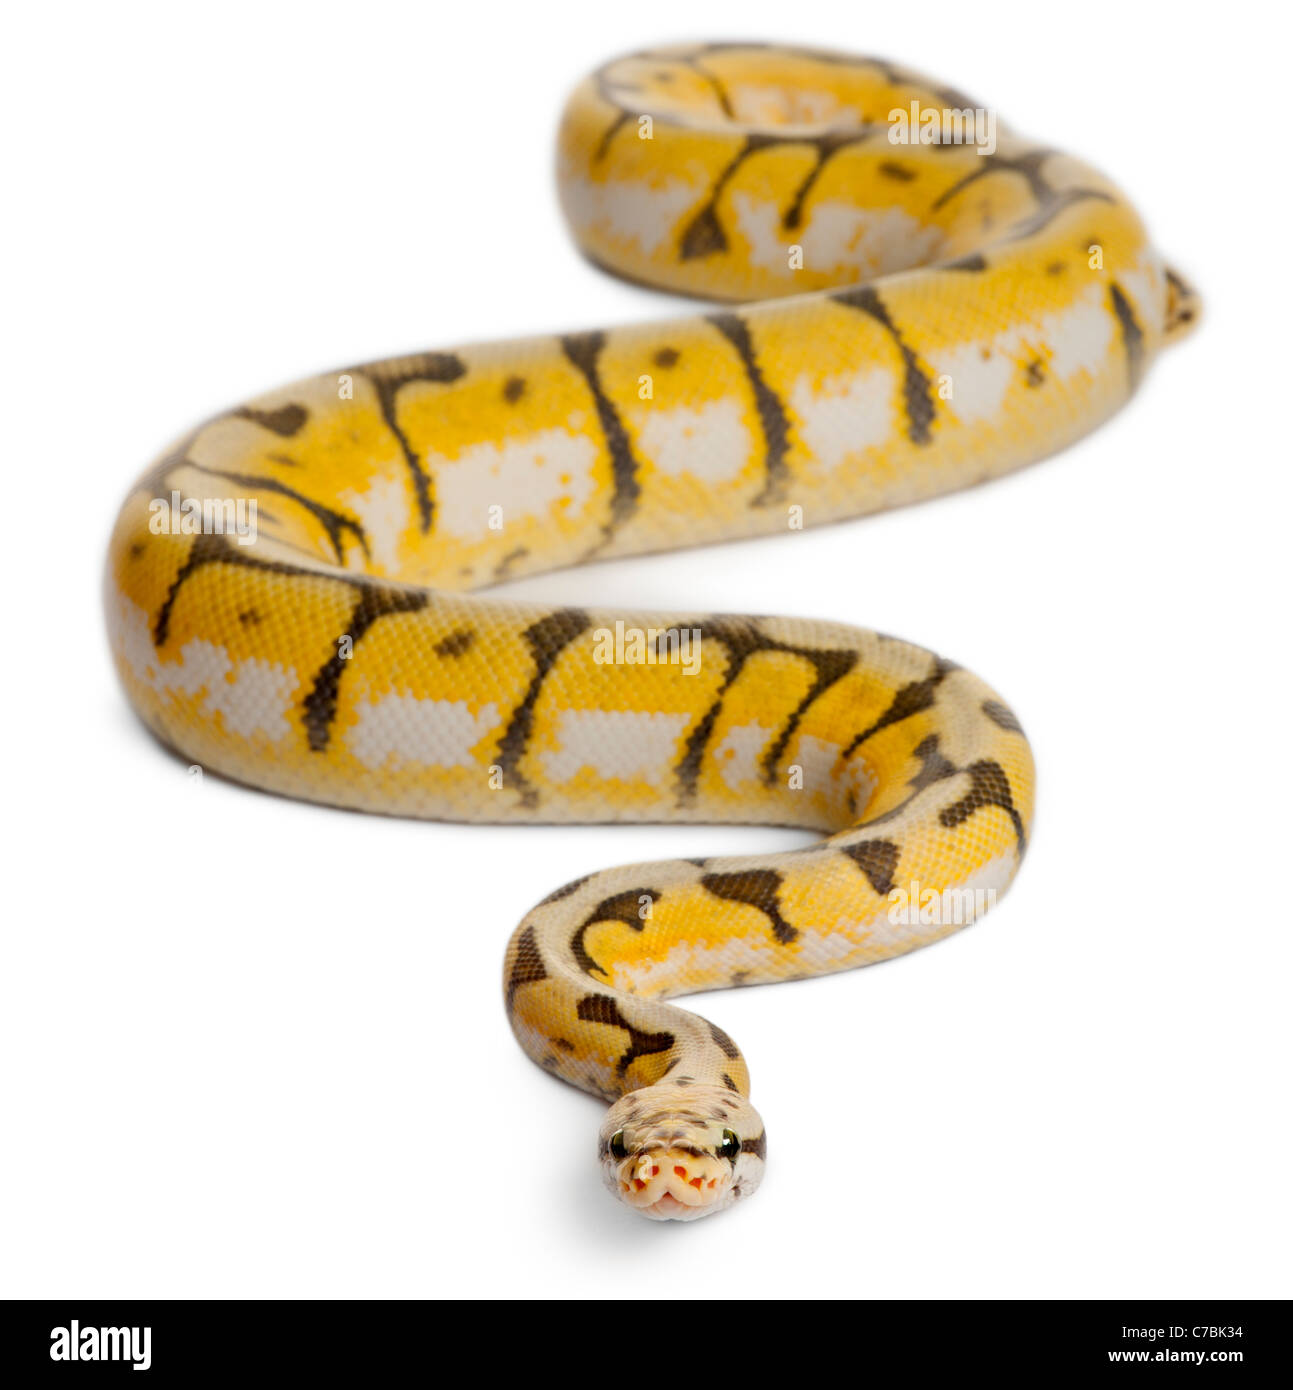 Killerbee femmina Royal Python Python regius, 1 anno di età, di fronte a uno sfondo bianco Foto Stock